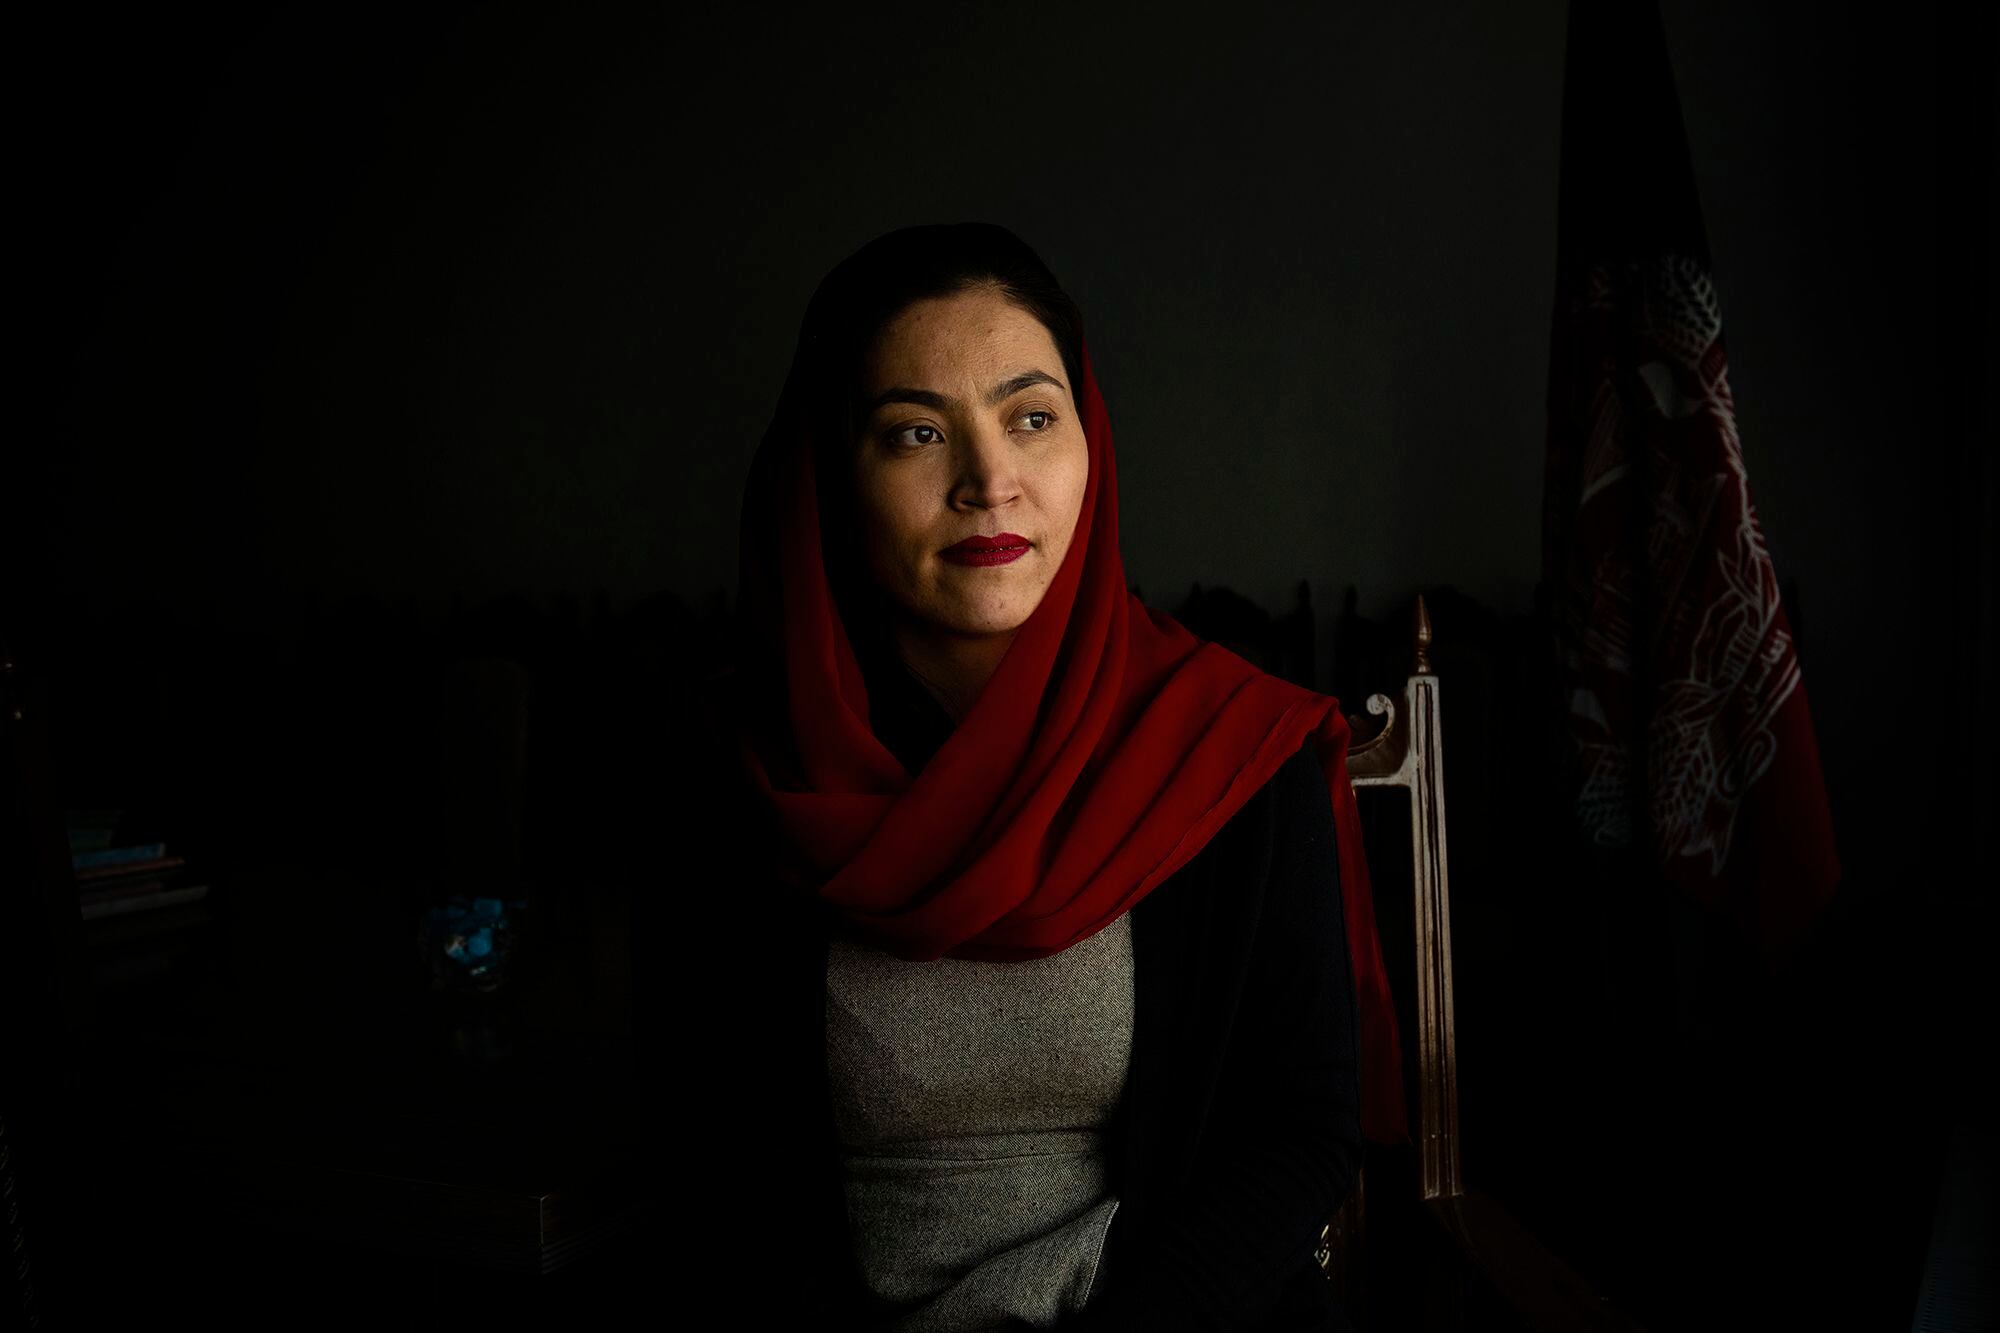 Gaisu Yari es un referente para las mujeres de Afganistán. Comisionada para Asuntos Sociales del anterior Gobierno, graduada en EE UU, tuvo que abandonar el país con la llegada de los talibanes. Esta fotografía fue tomada en Kabul en marzo de 2020.